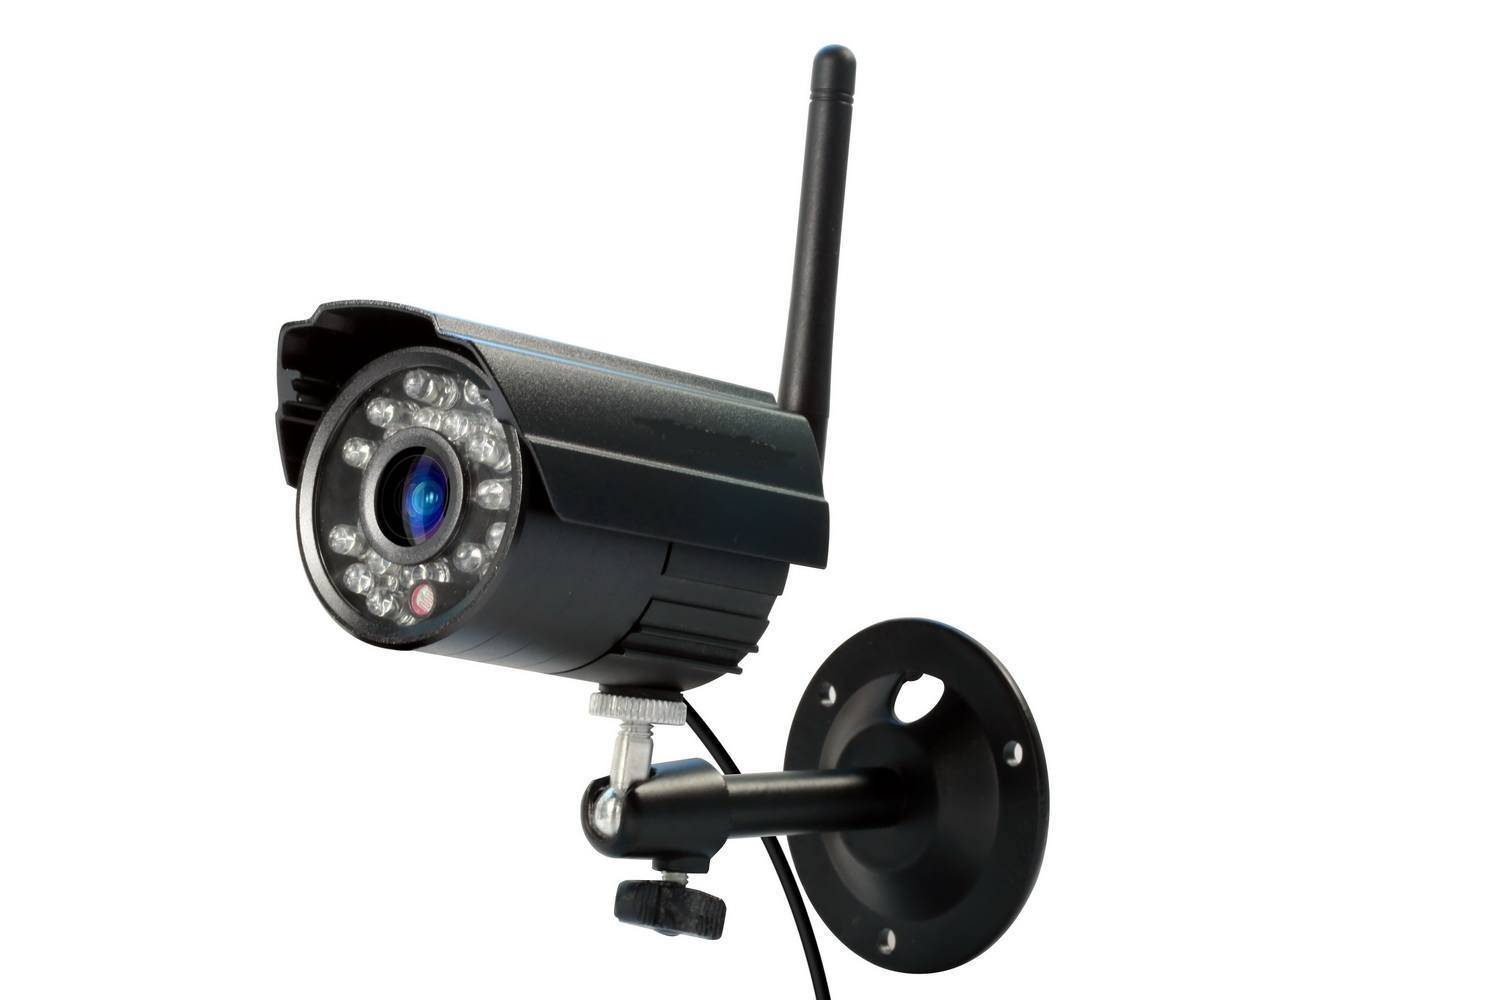 Moniteur de vidéo surveillance LED avec Media player intégré